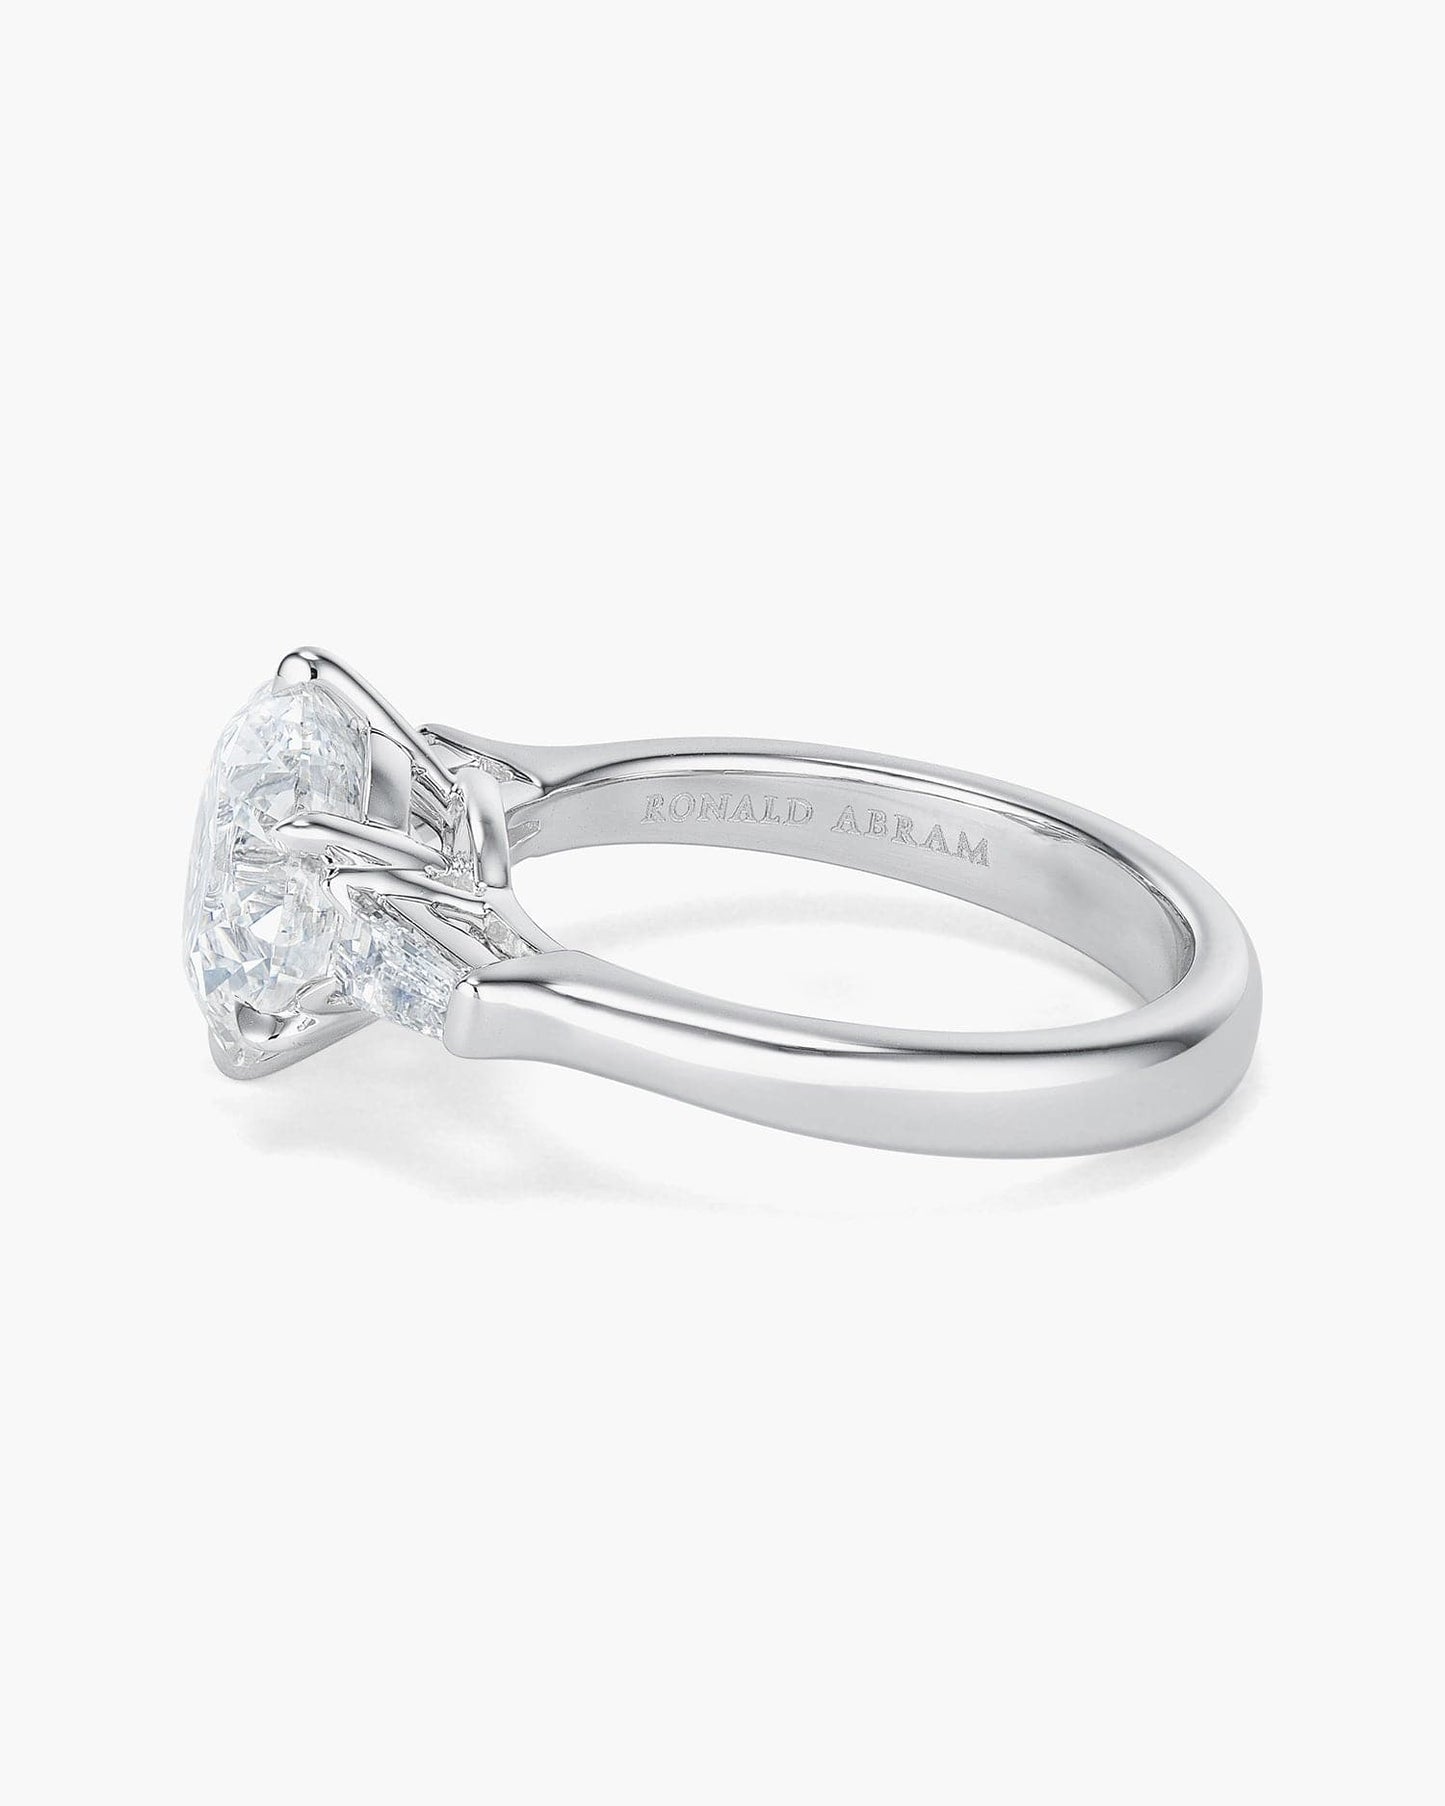 3.21 carat Round Brilliant Cut Diamond Ring